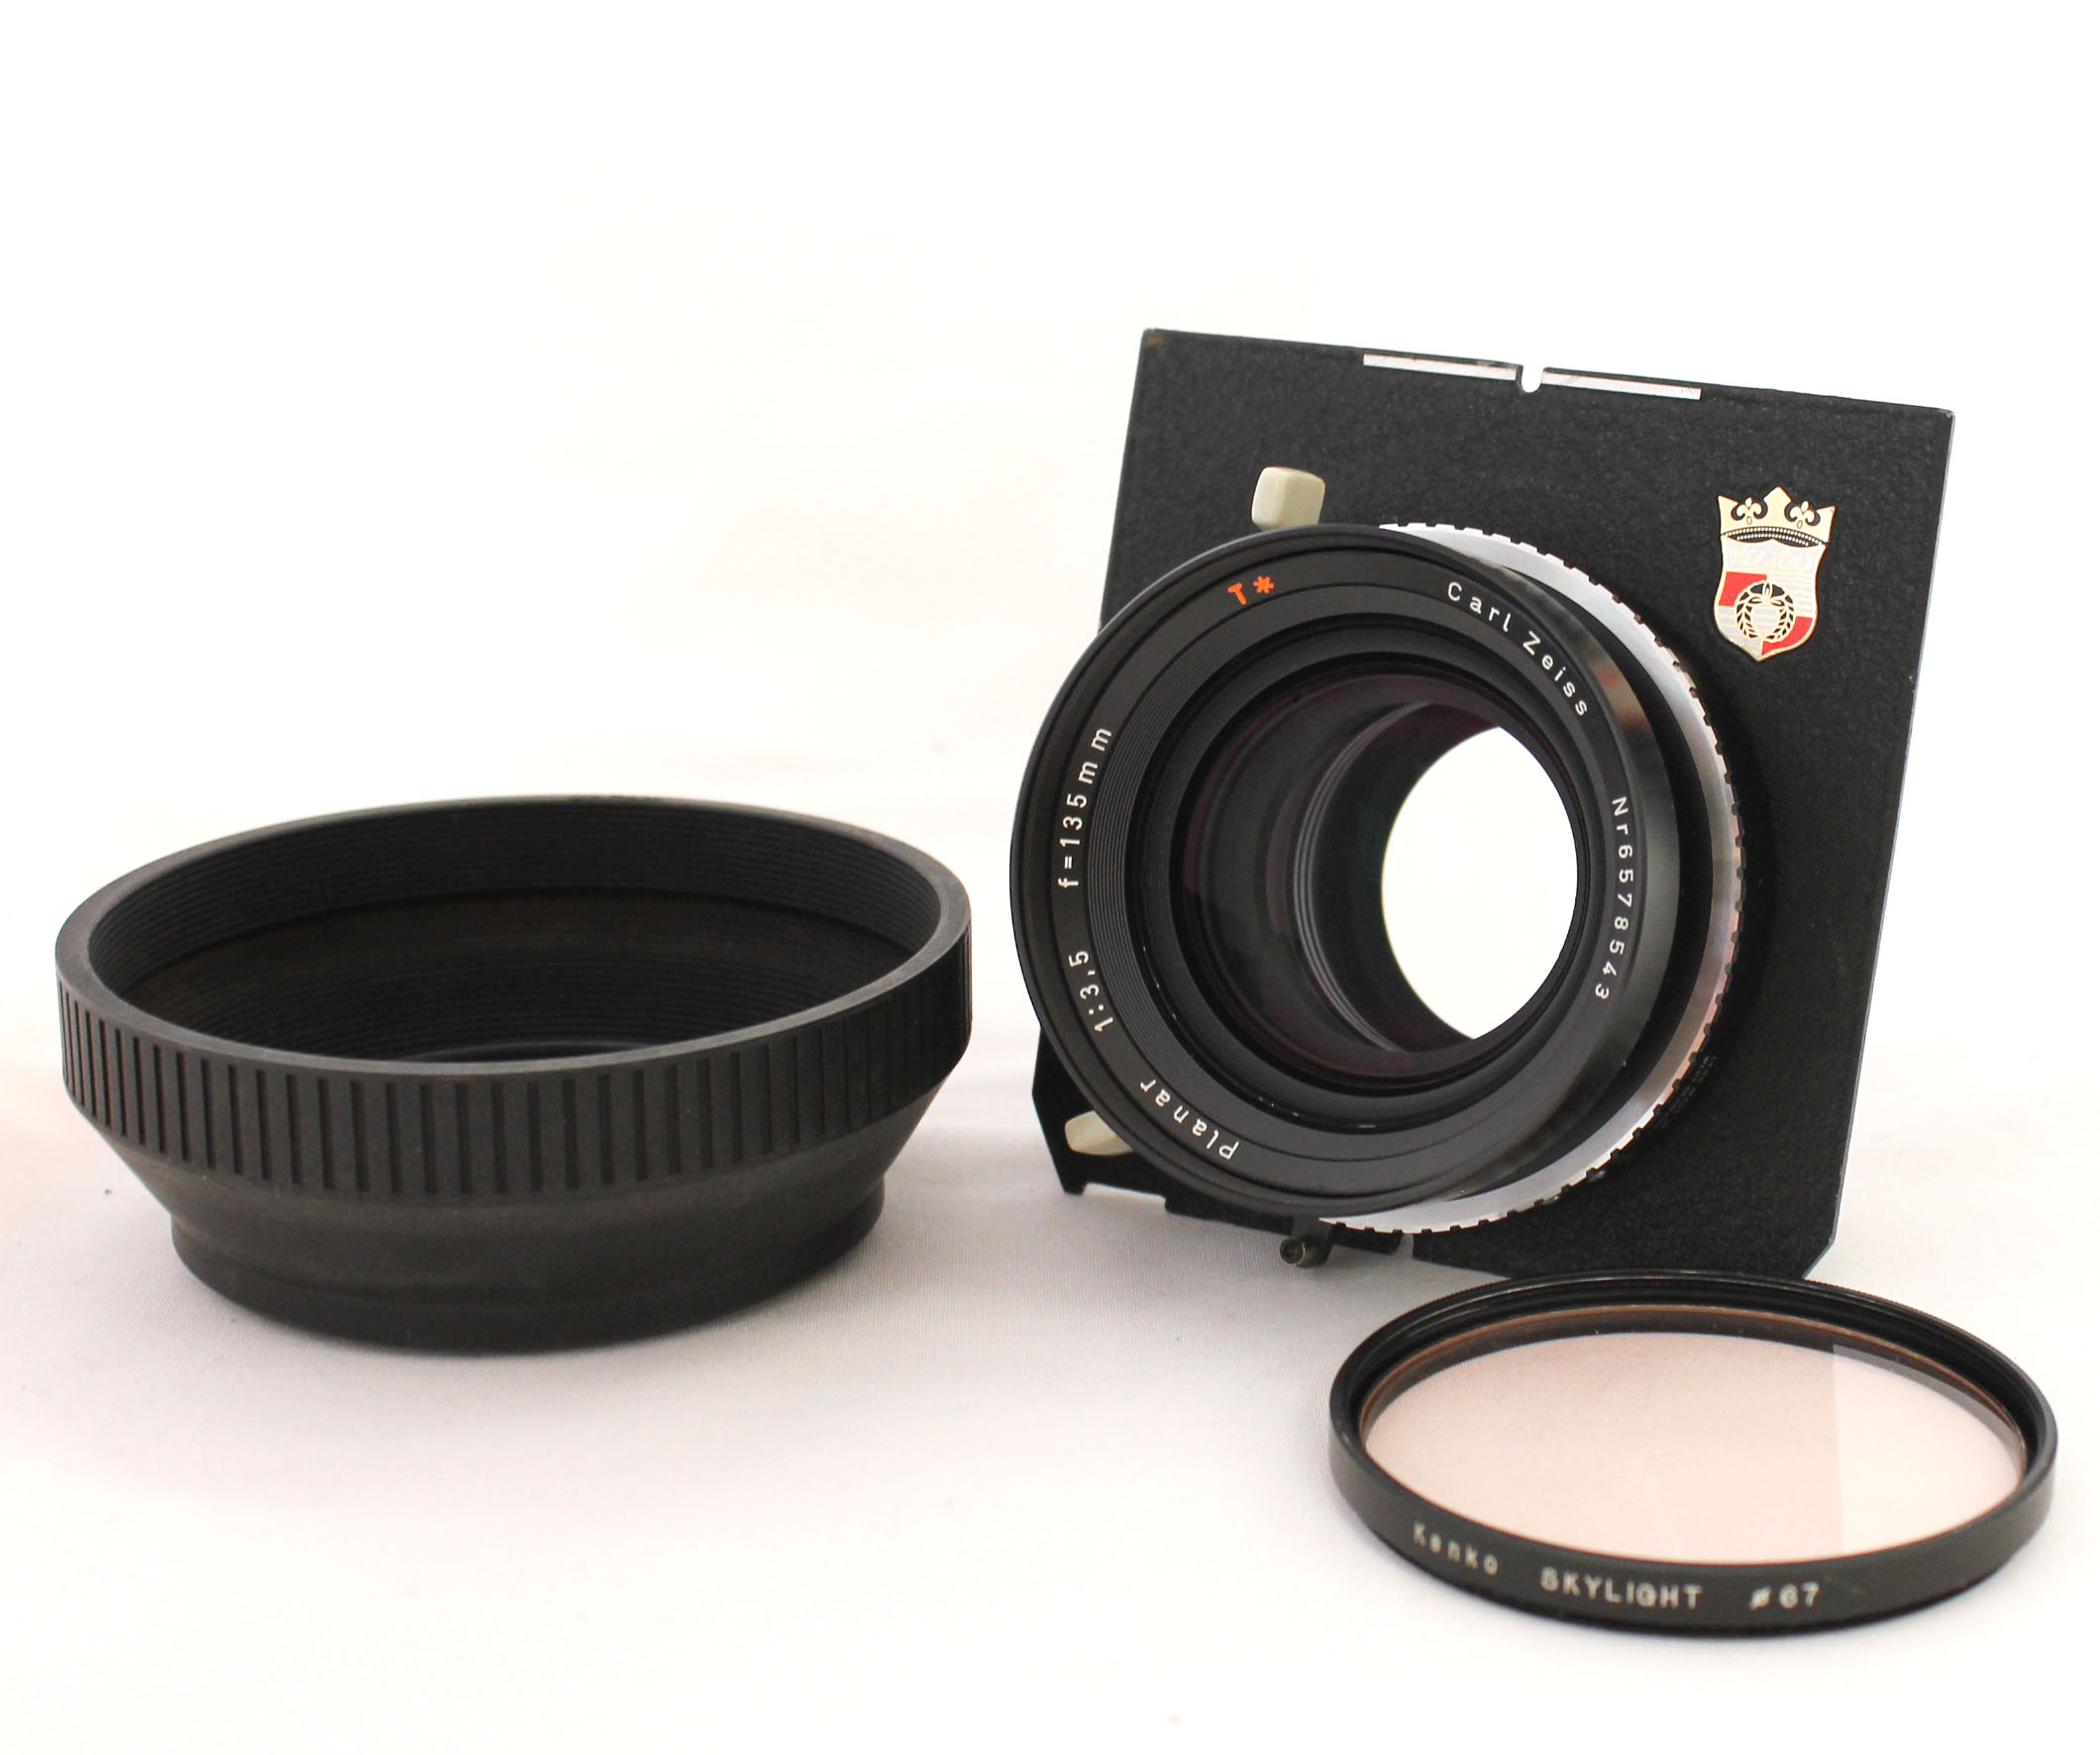 Carl Zeiss Planar 135mm F/3.5 T* 4x5 Lens Compur 1 Shutter w/ Wista Linhof Board from Japan